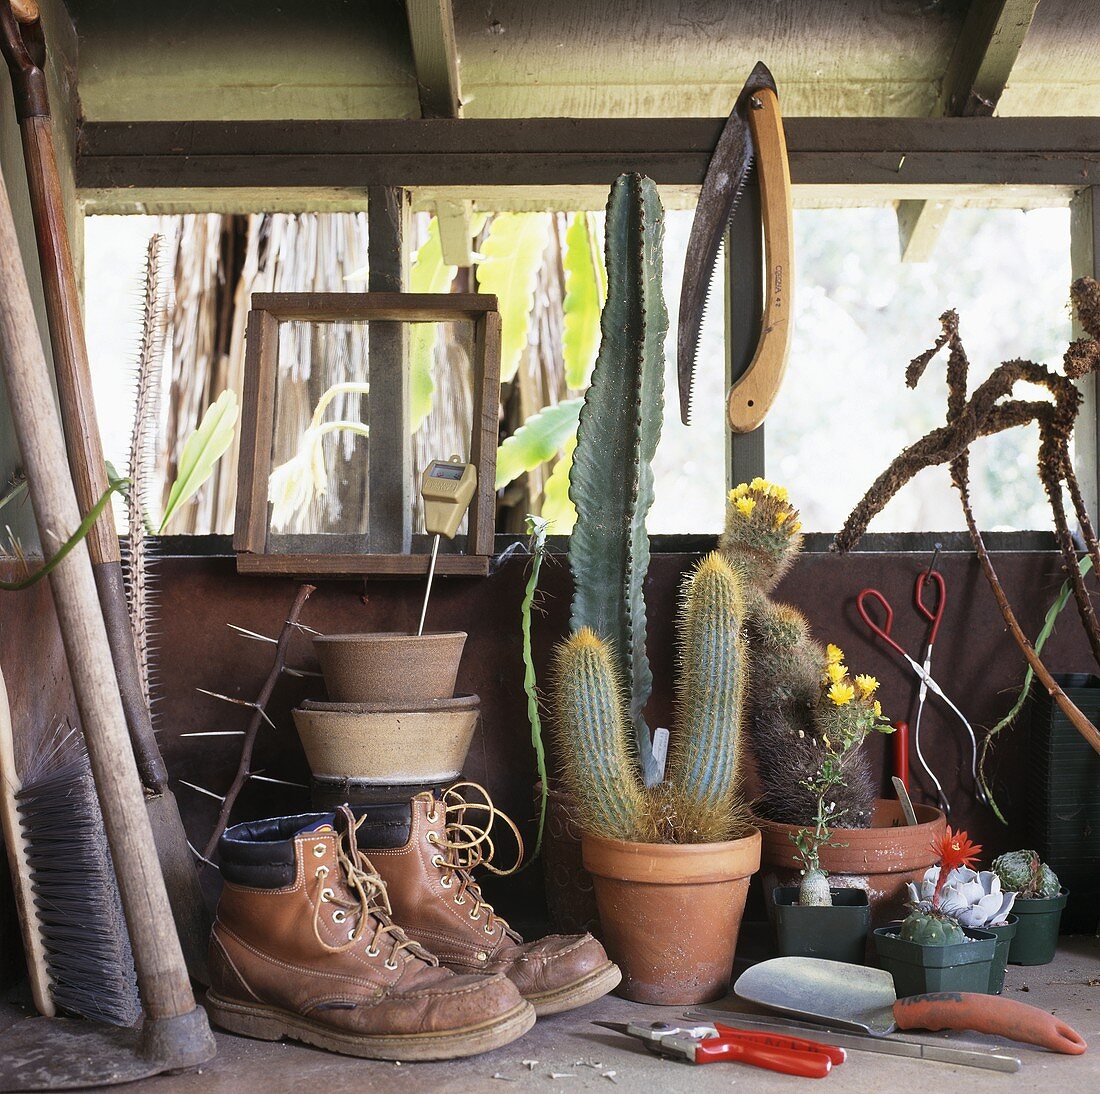 Alte Lederstiefel, Kakteen und Gartengeräte auf dem Regal im Gartenhäuschen